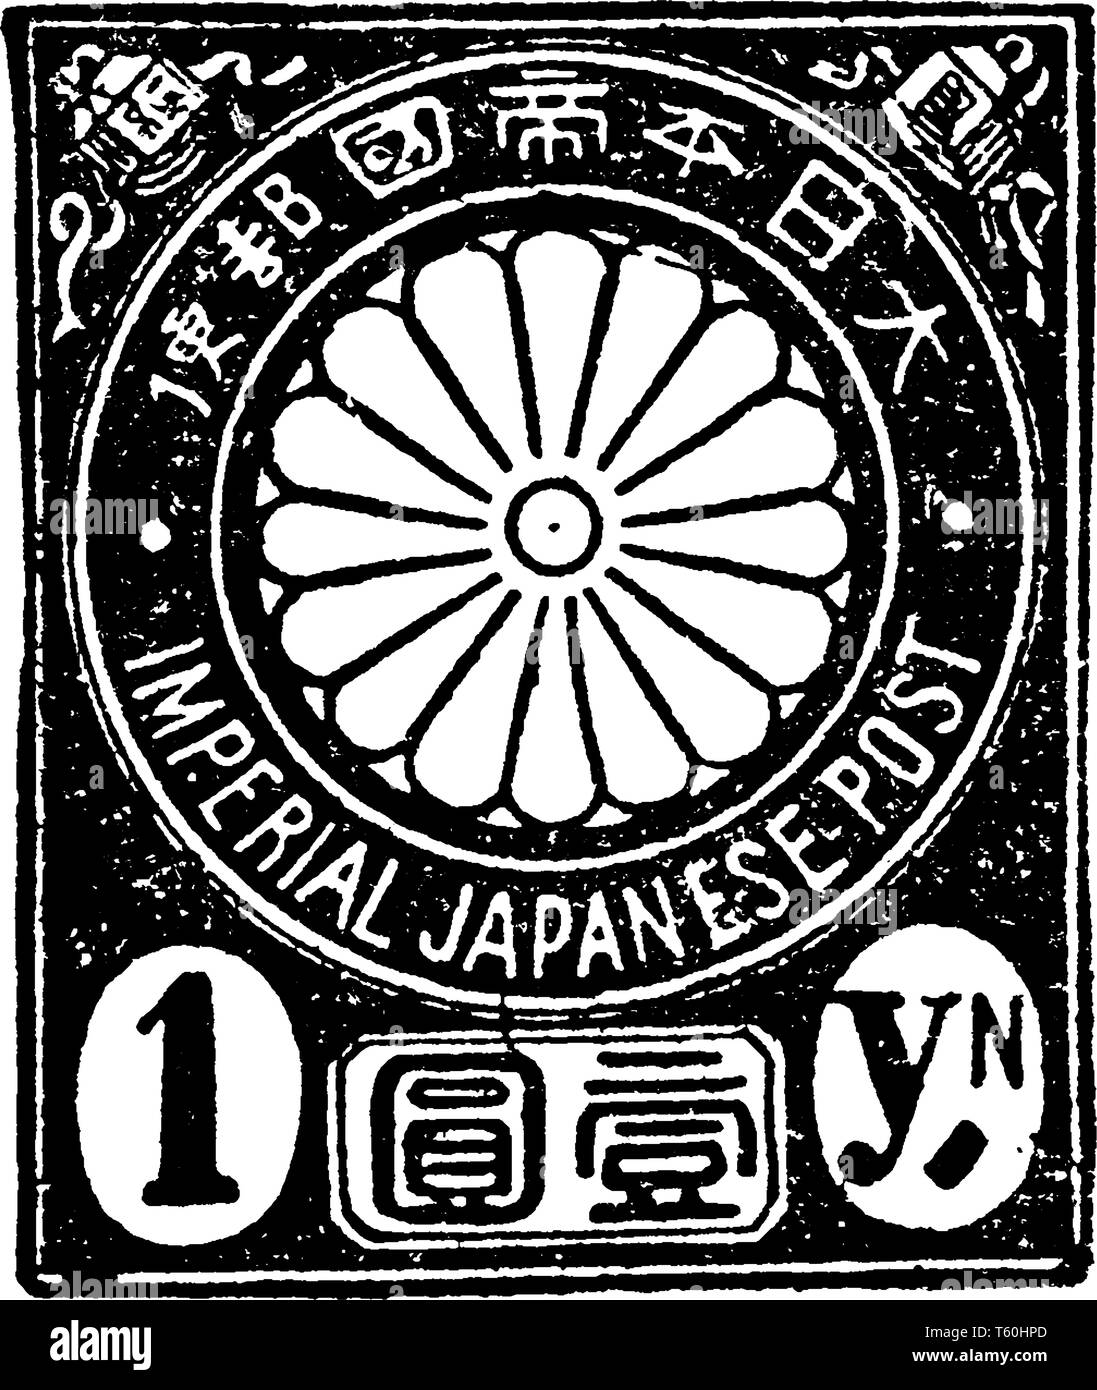 Questa immagine rappresenta il Giappone 1 Yen timbro nel 1888, vintage disegno della linea di incisione o illustrazione. Illustrazione Vettoriale